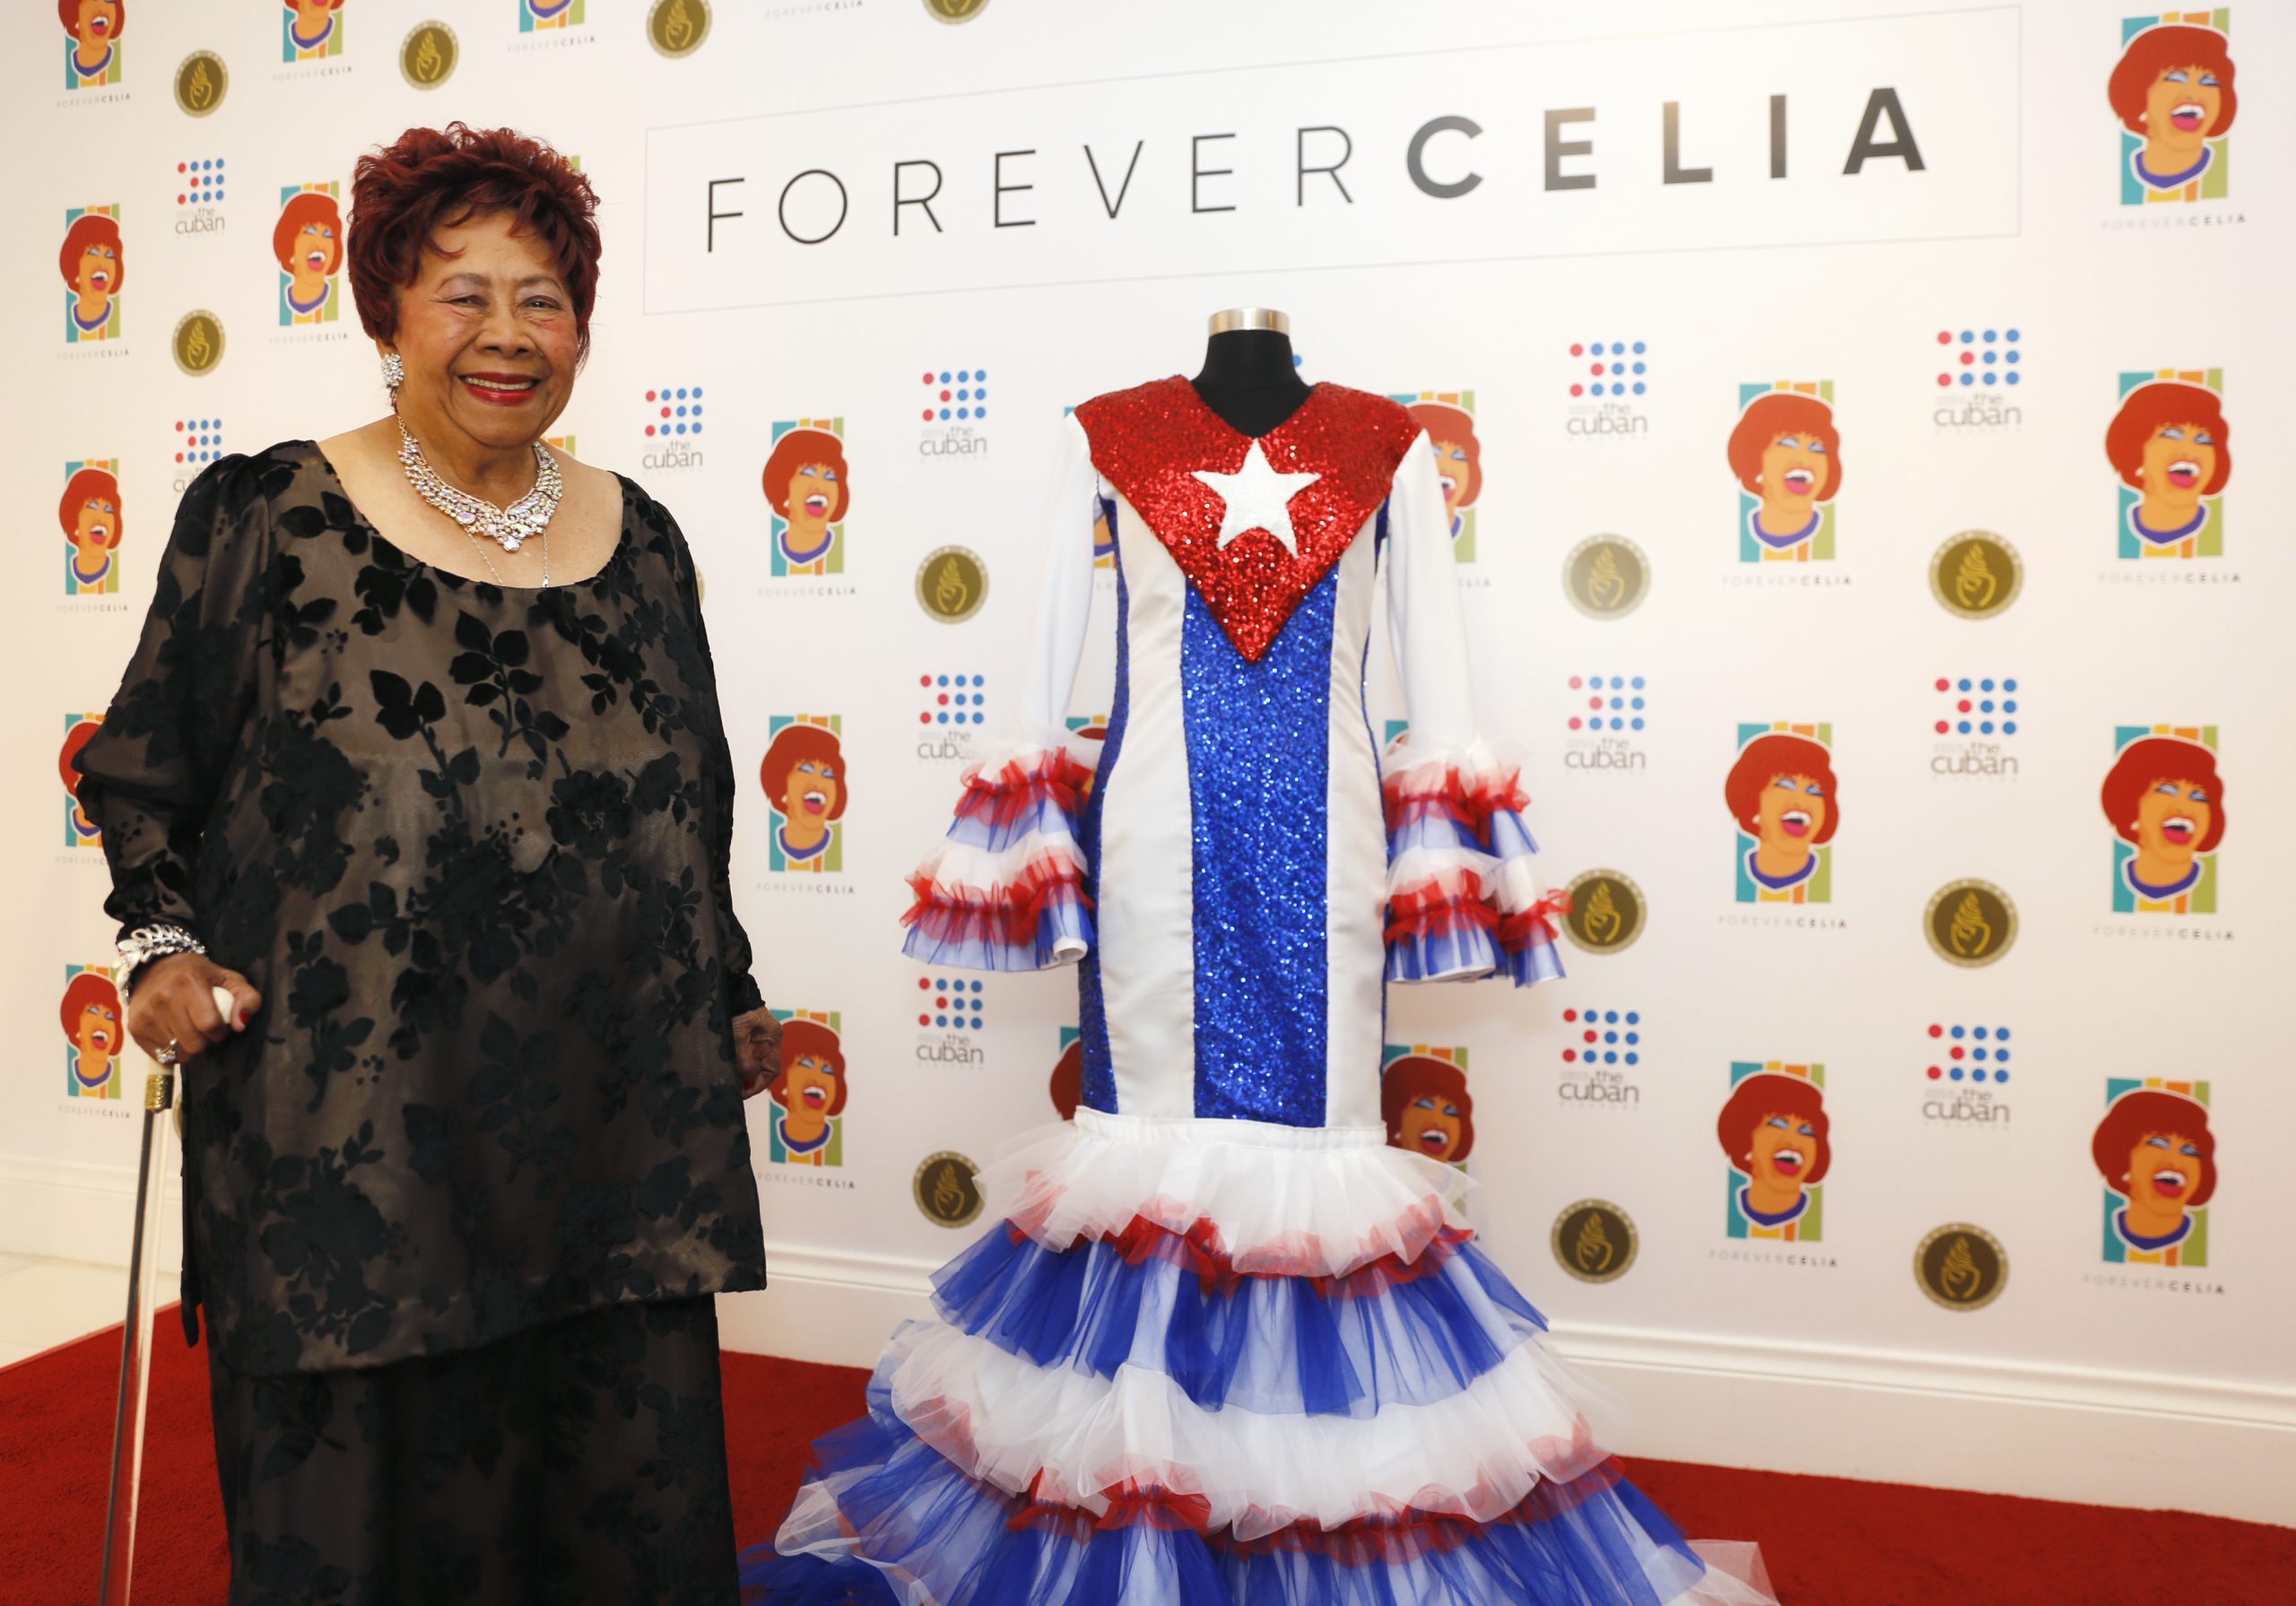 Irma Peñalver posa al lado de la famosa bata que ella confeccionó para Celia Cruz. Foto cortesía de Celia Cruz Legacy Project.